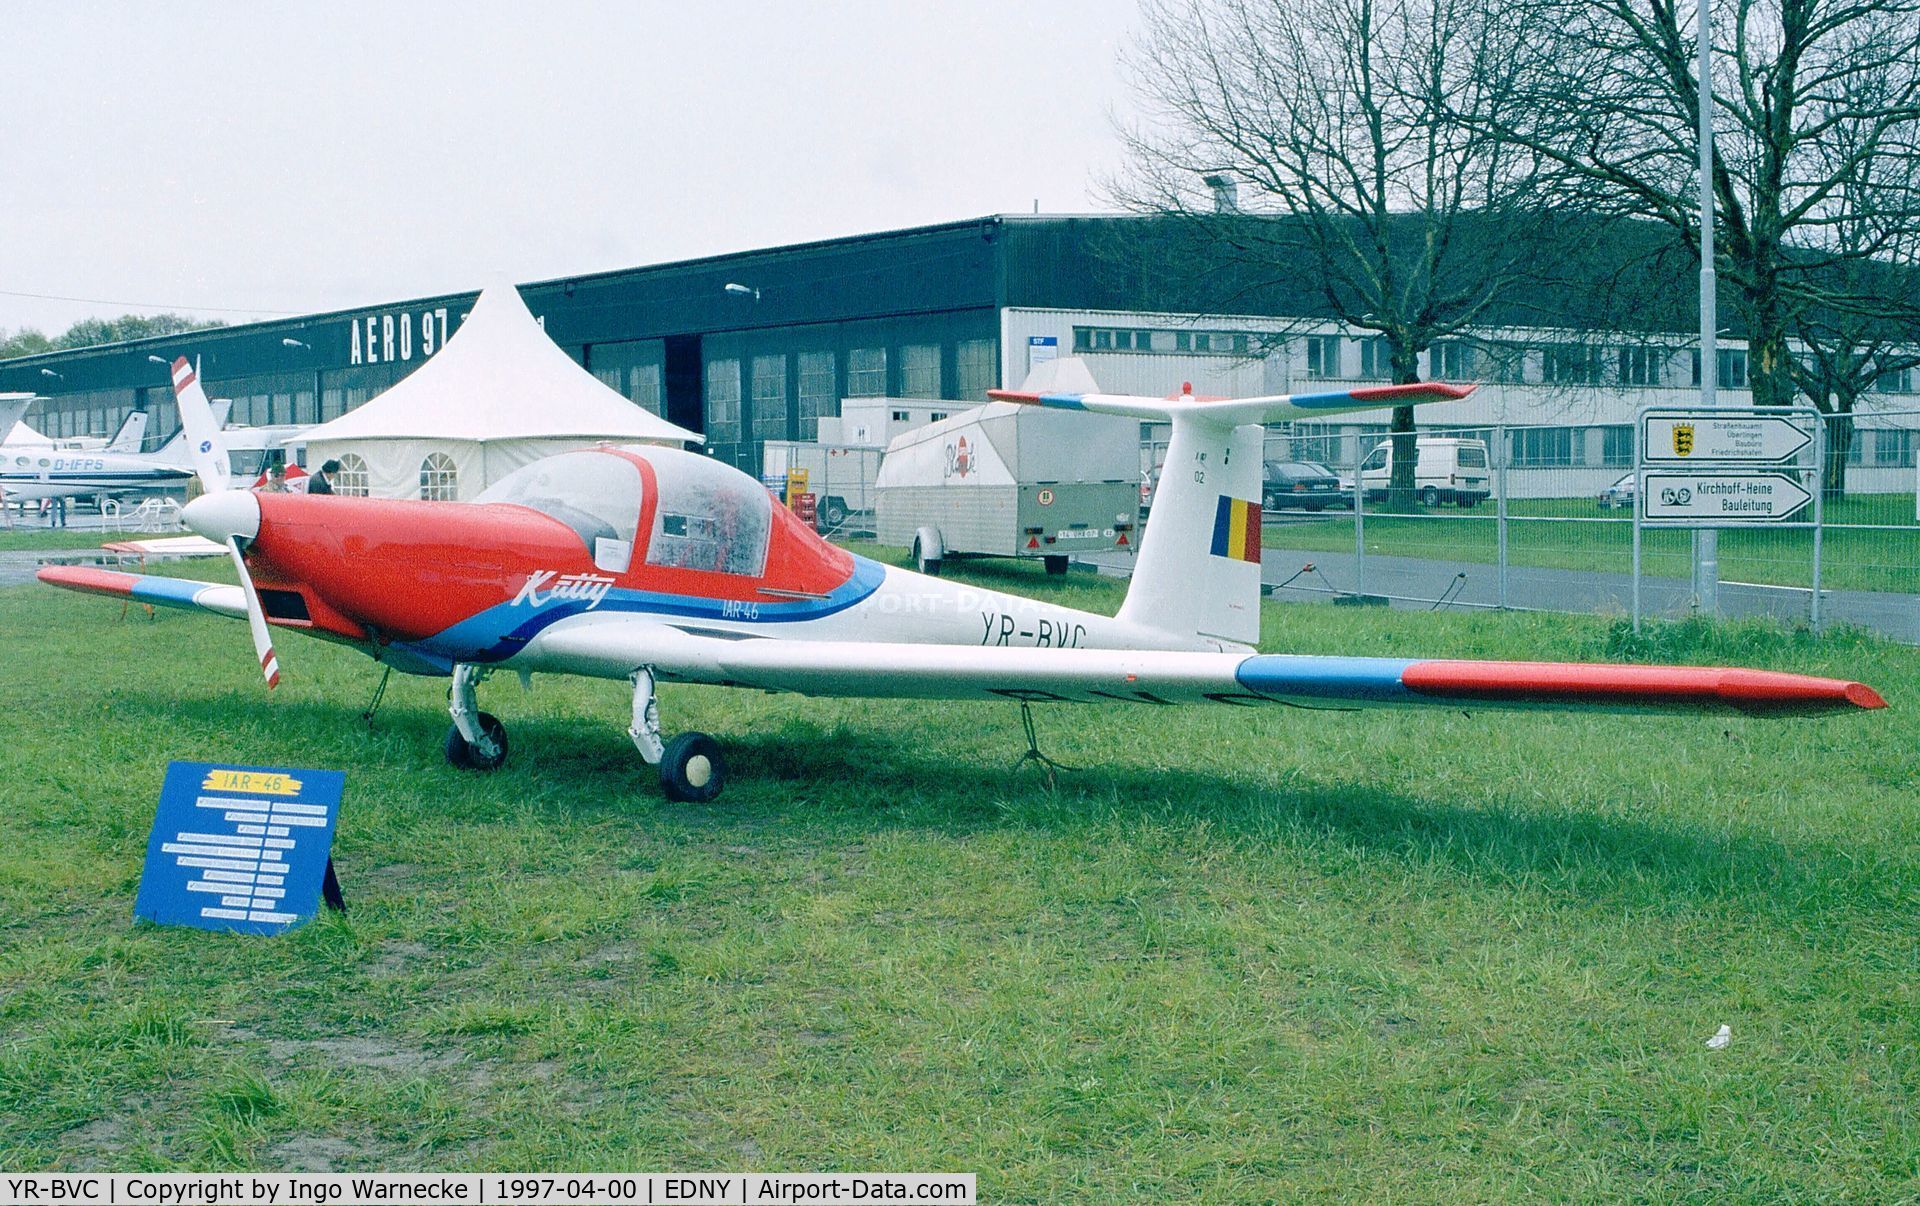 YR-BVC, IAR IAR-46S C/N 002, IAR IAR-46S at the Aero 1997, Friedrichshafen